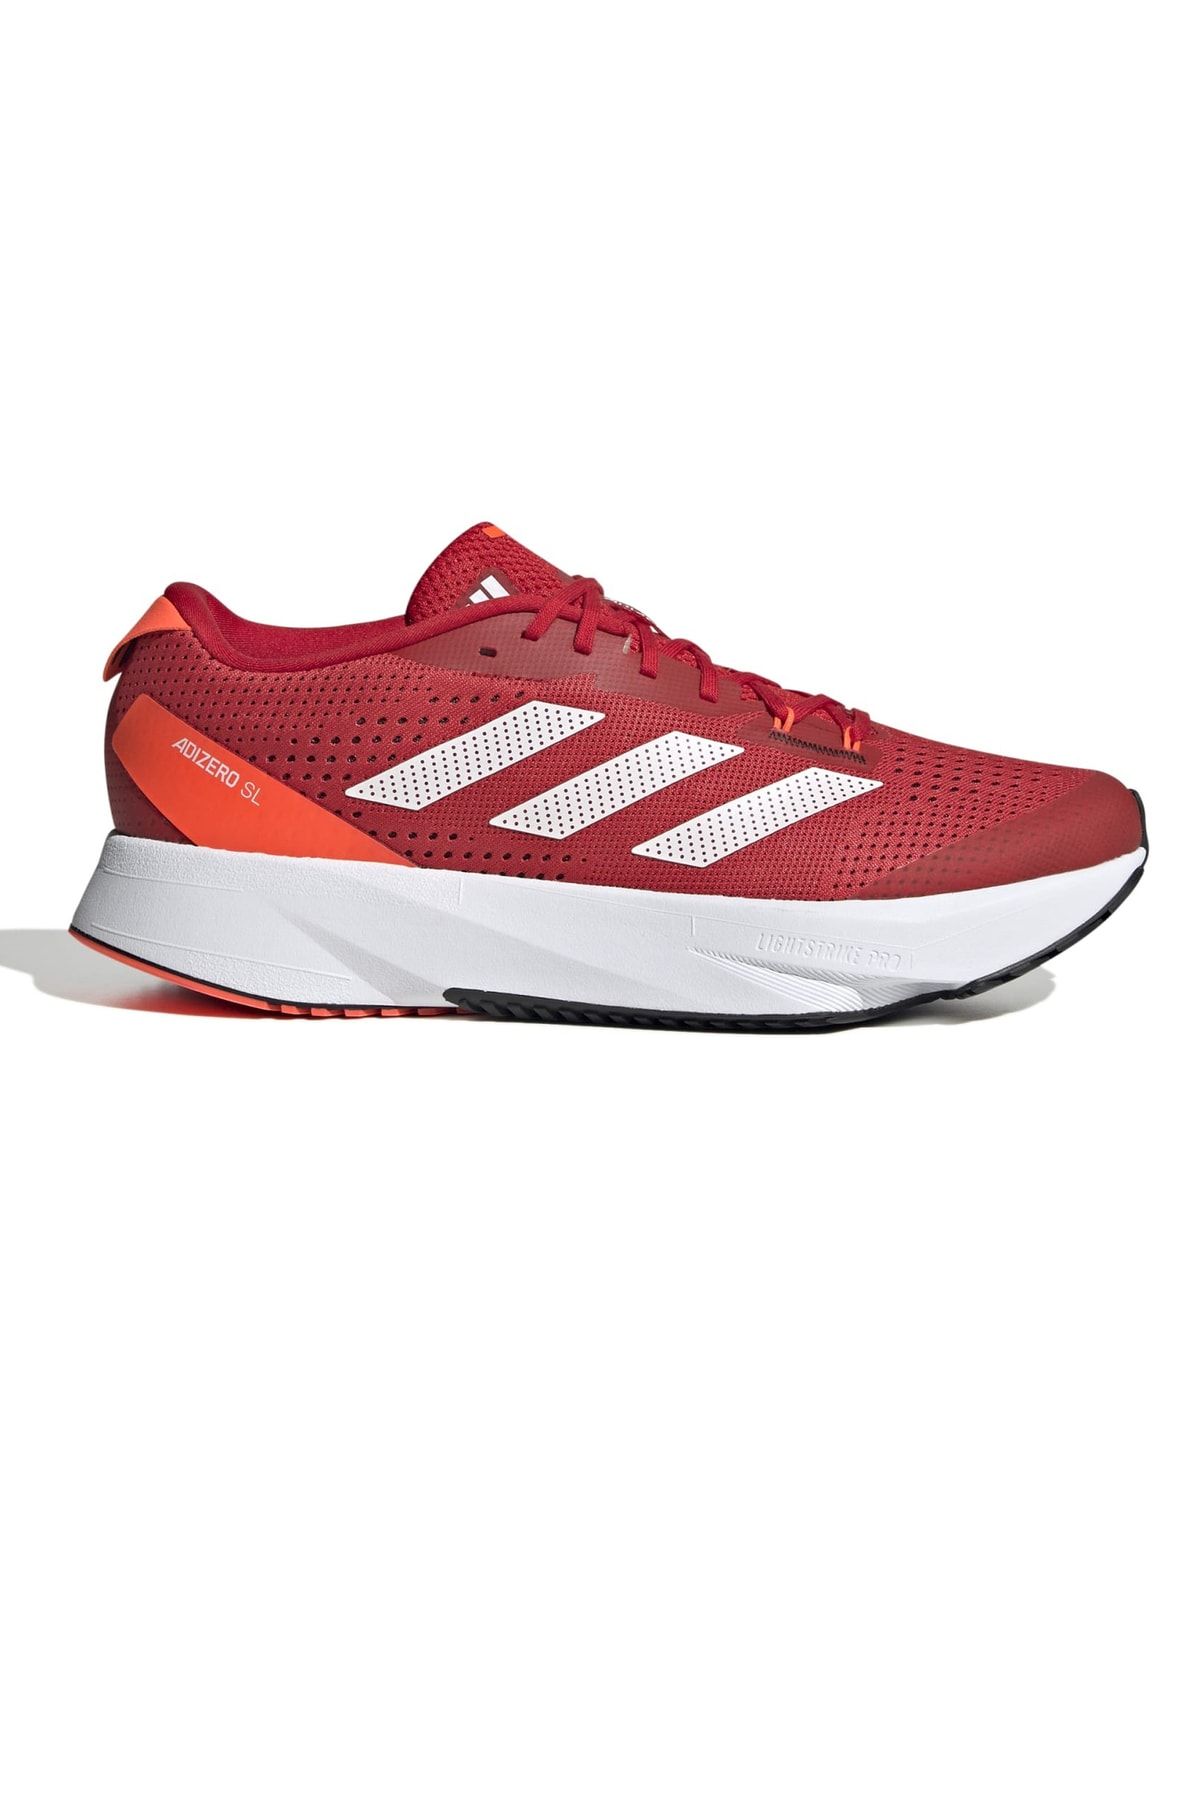 adidas Hq1346-e Adızero Sl Erkek Spor Ayakkabı Kırmızı